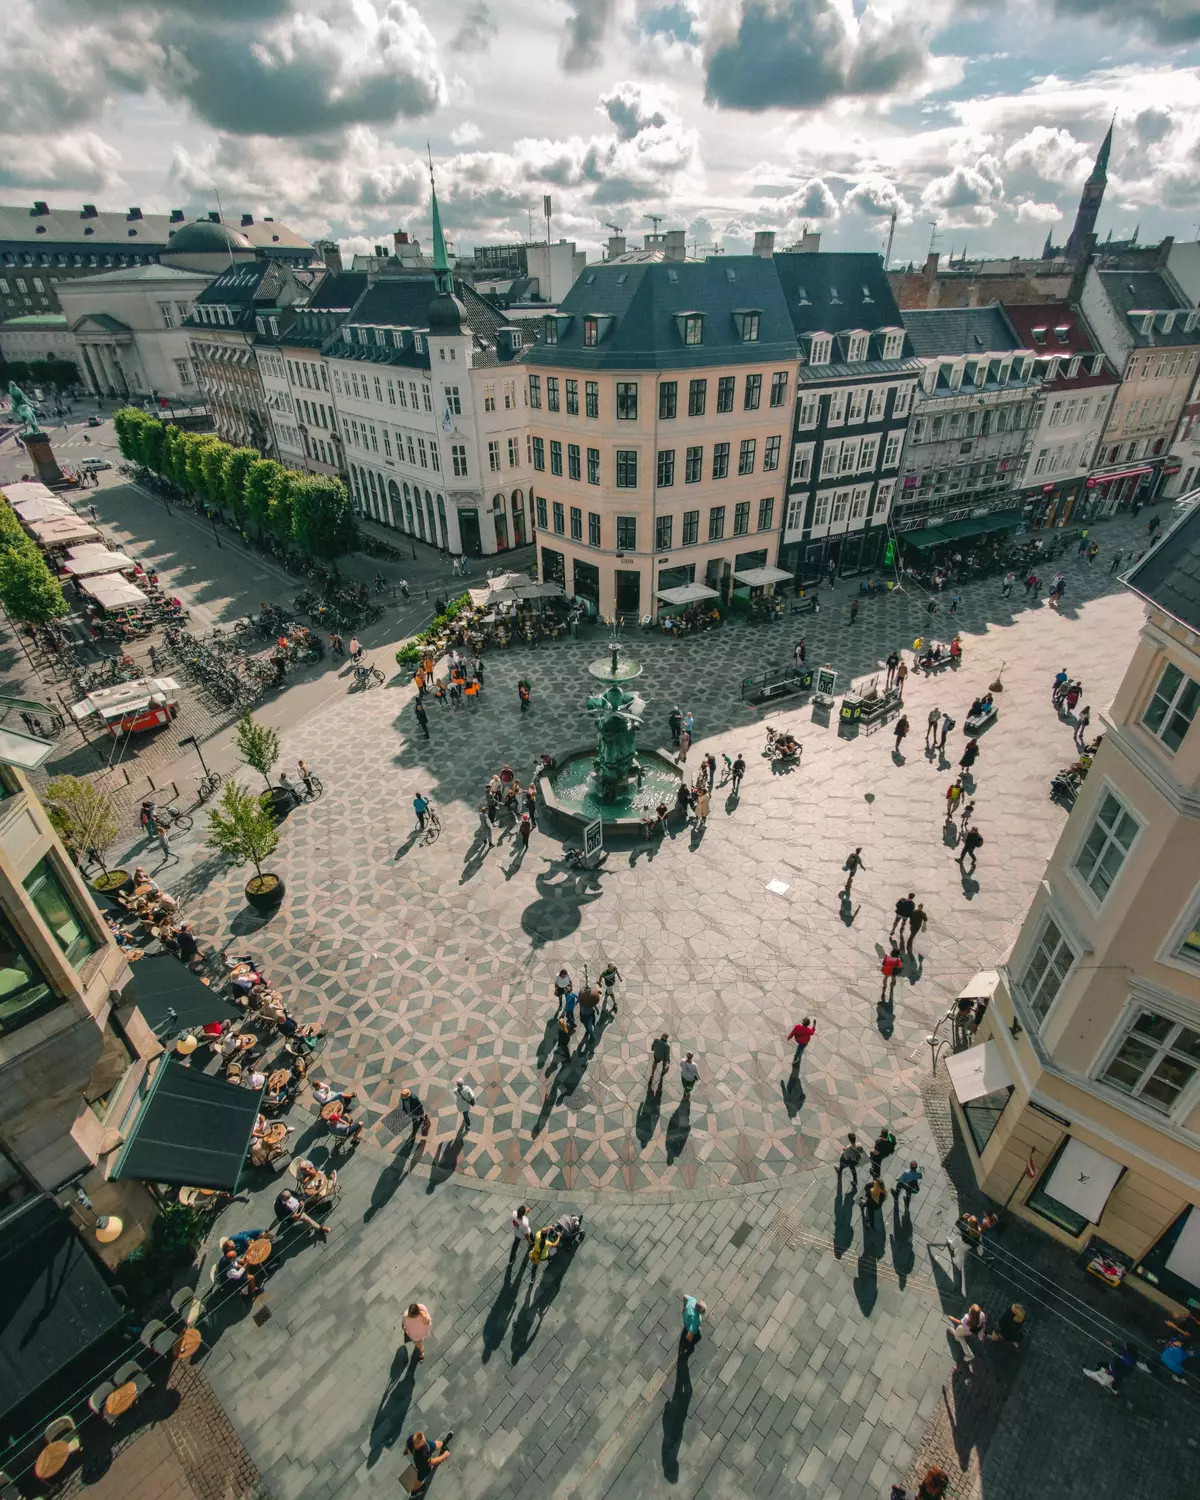 Strøget in Copenhagen